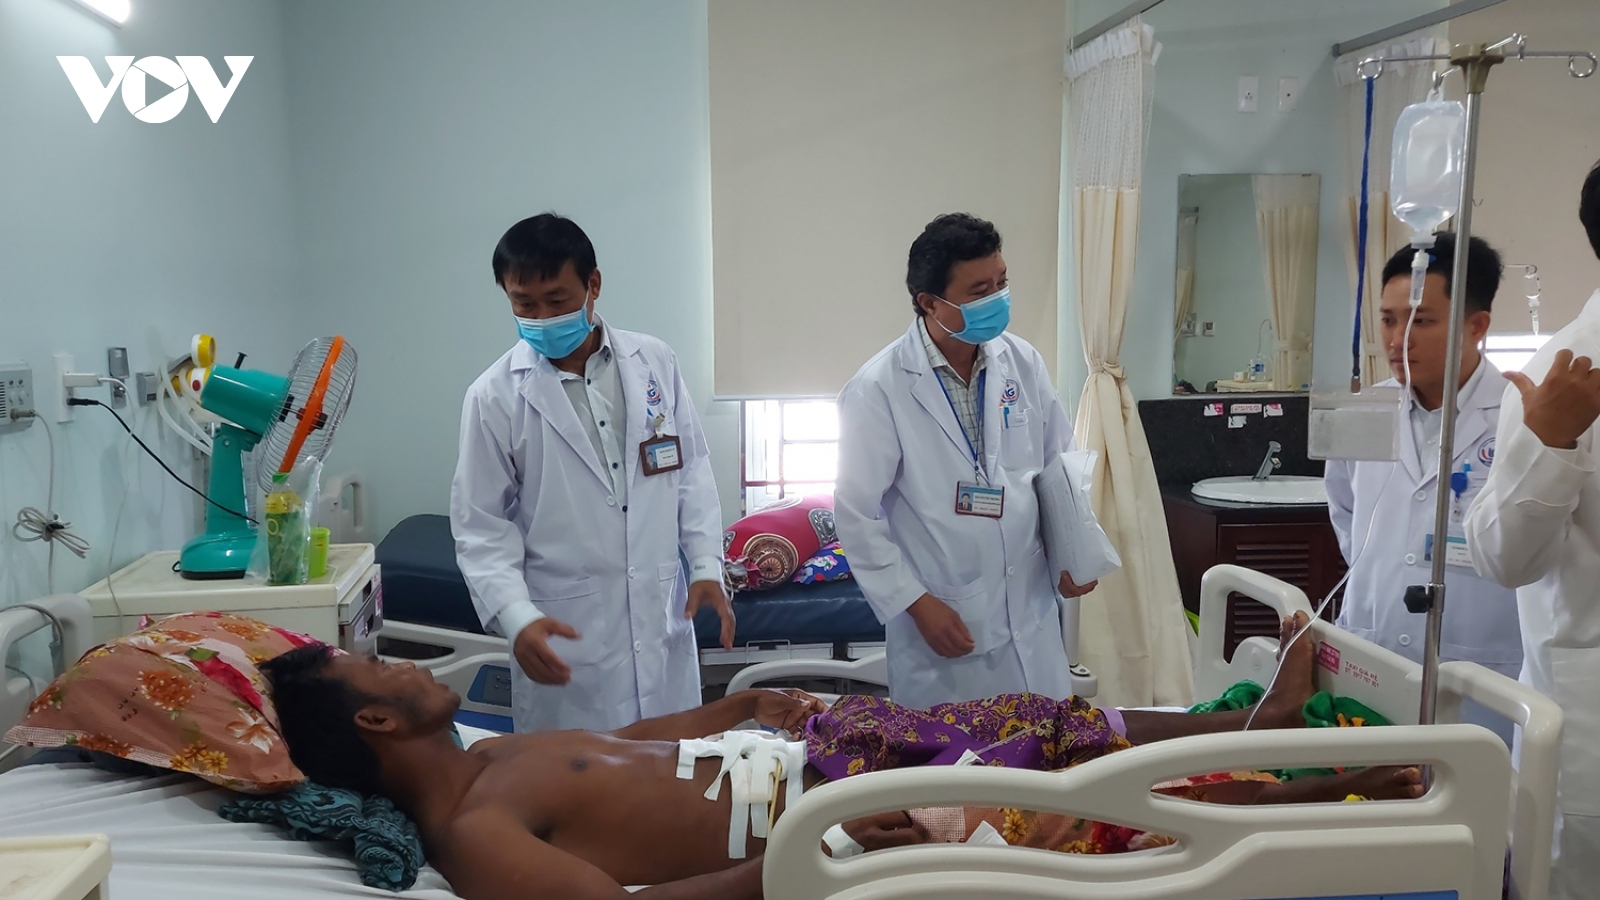 Cấp cứu kịp thời cho một người dân Campuchia bị trâu húc thủng bụng